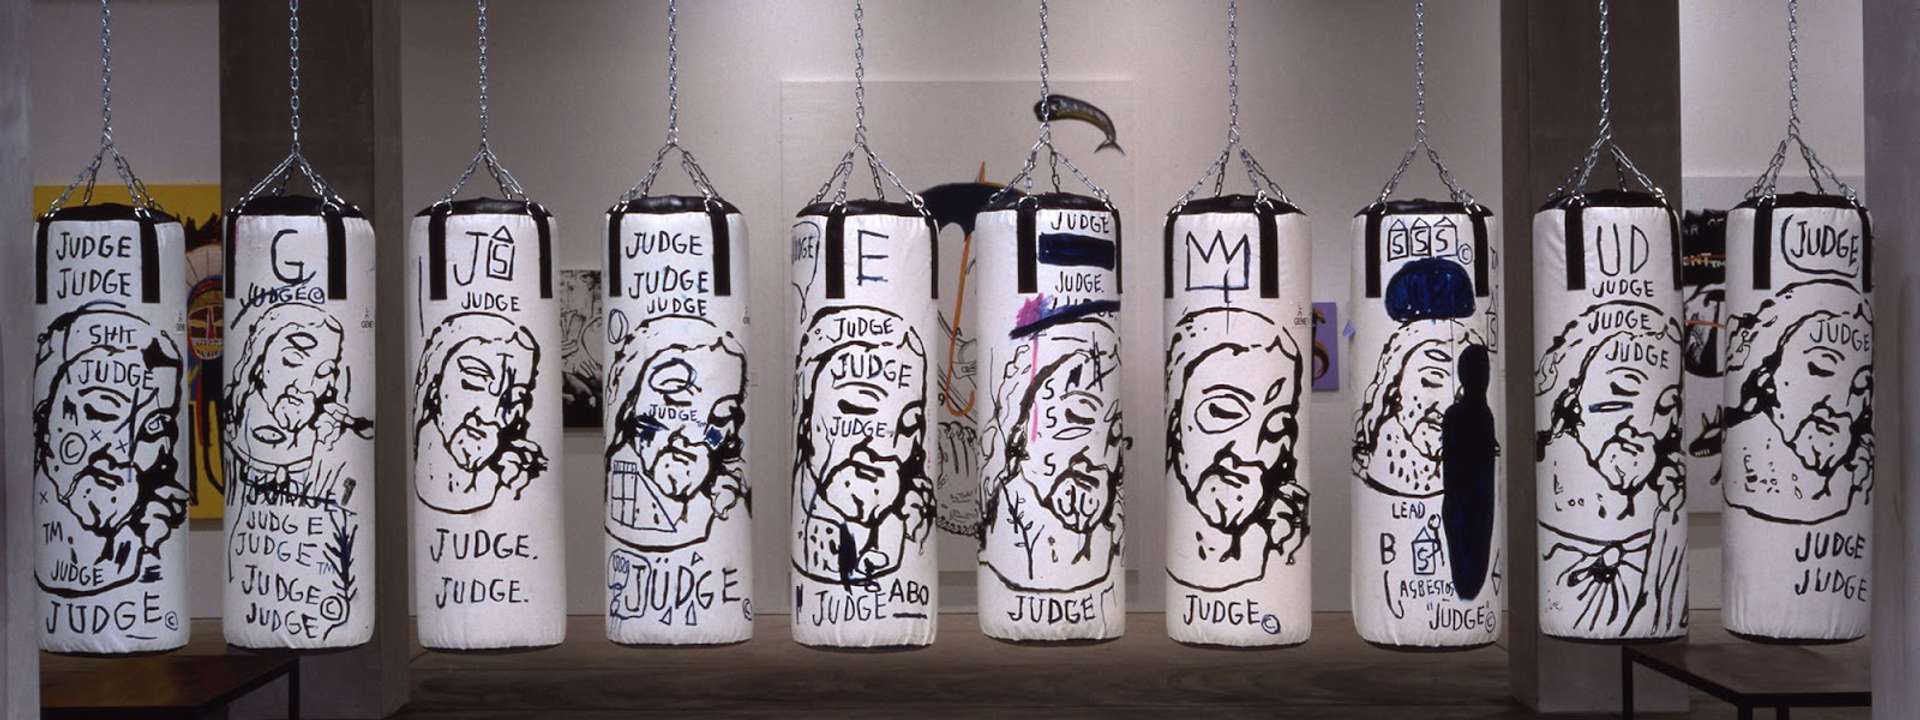 Basquiat x Warhol: Ten Punching Bags (Last Supper)